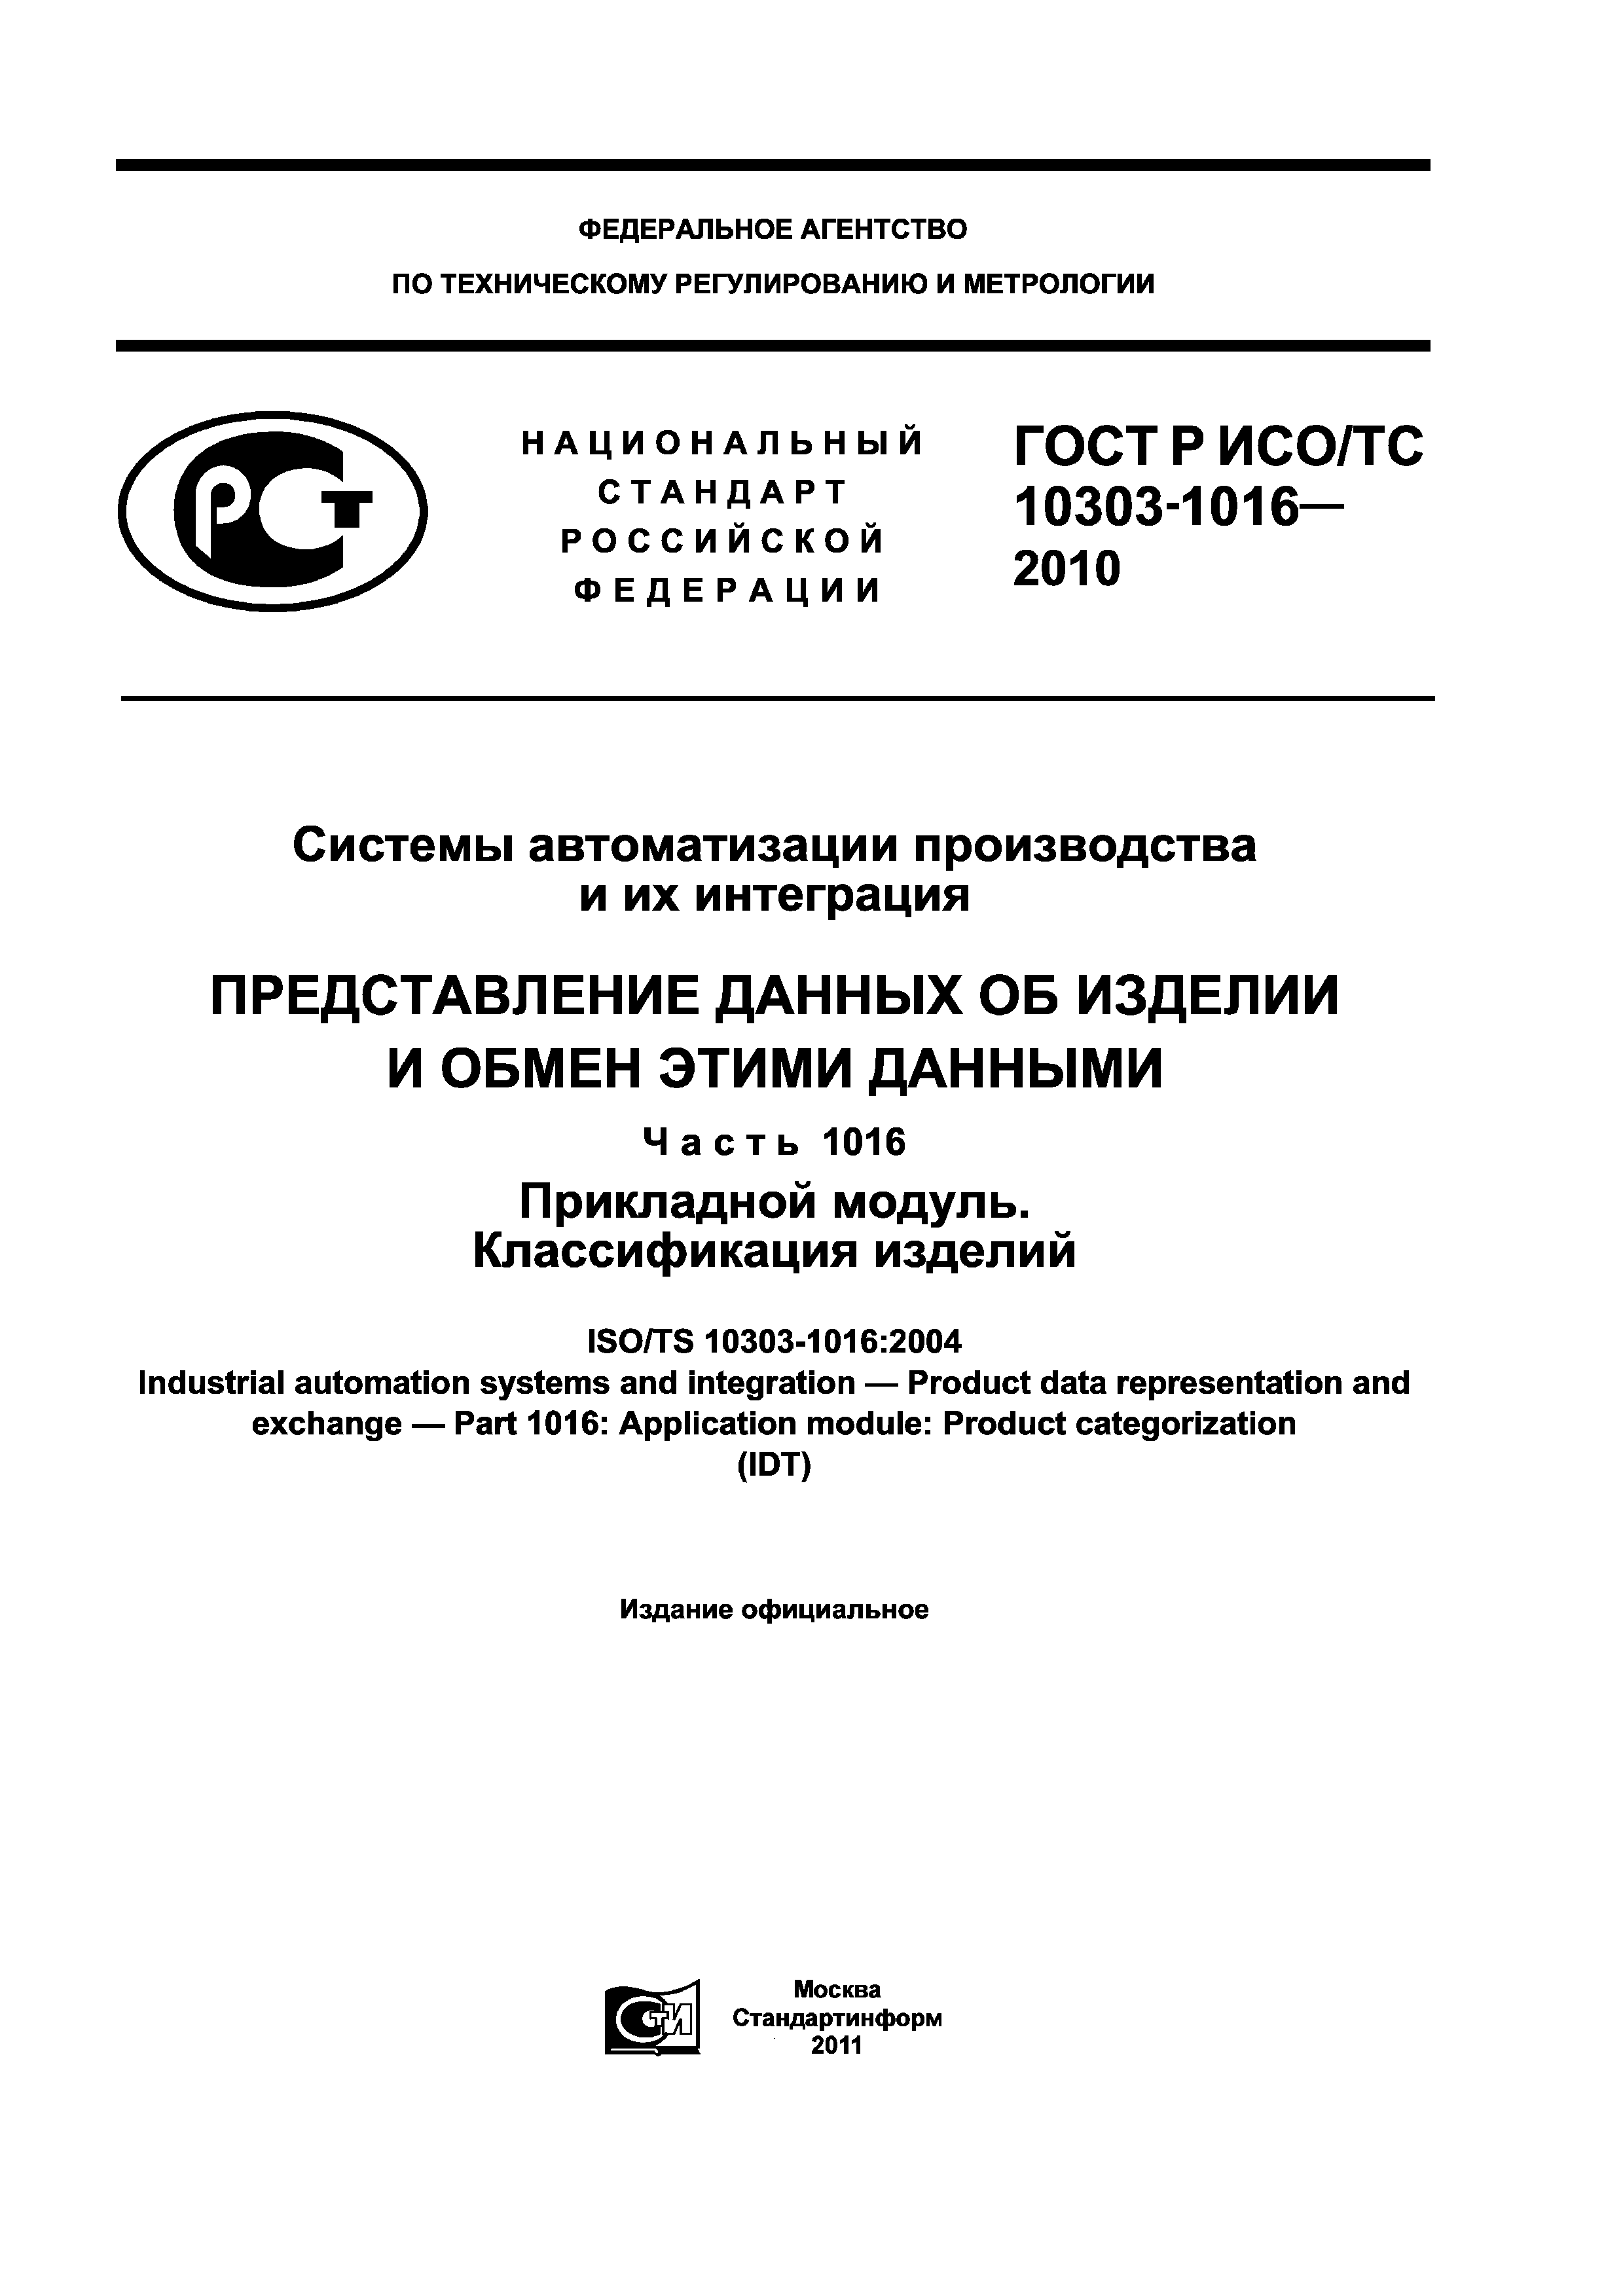 ГОСТ Р ИСО/ТС 10303-1016-2010